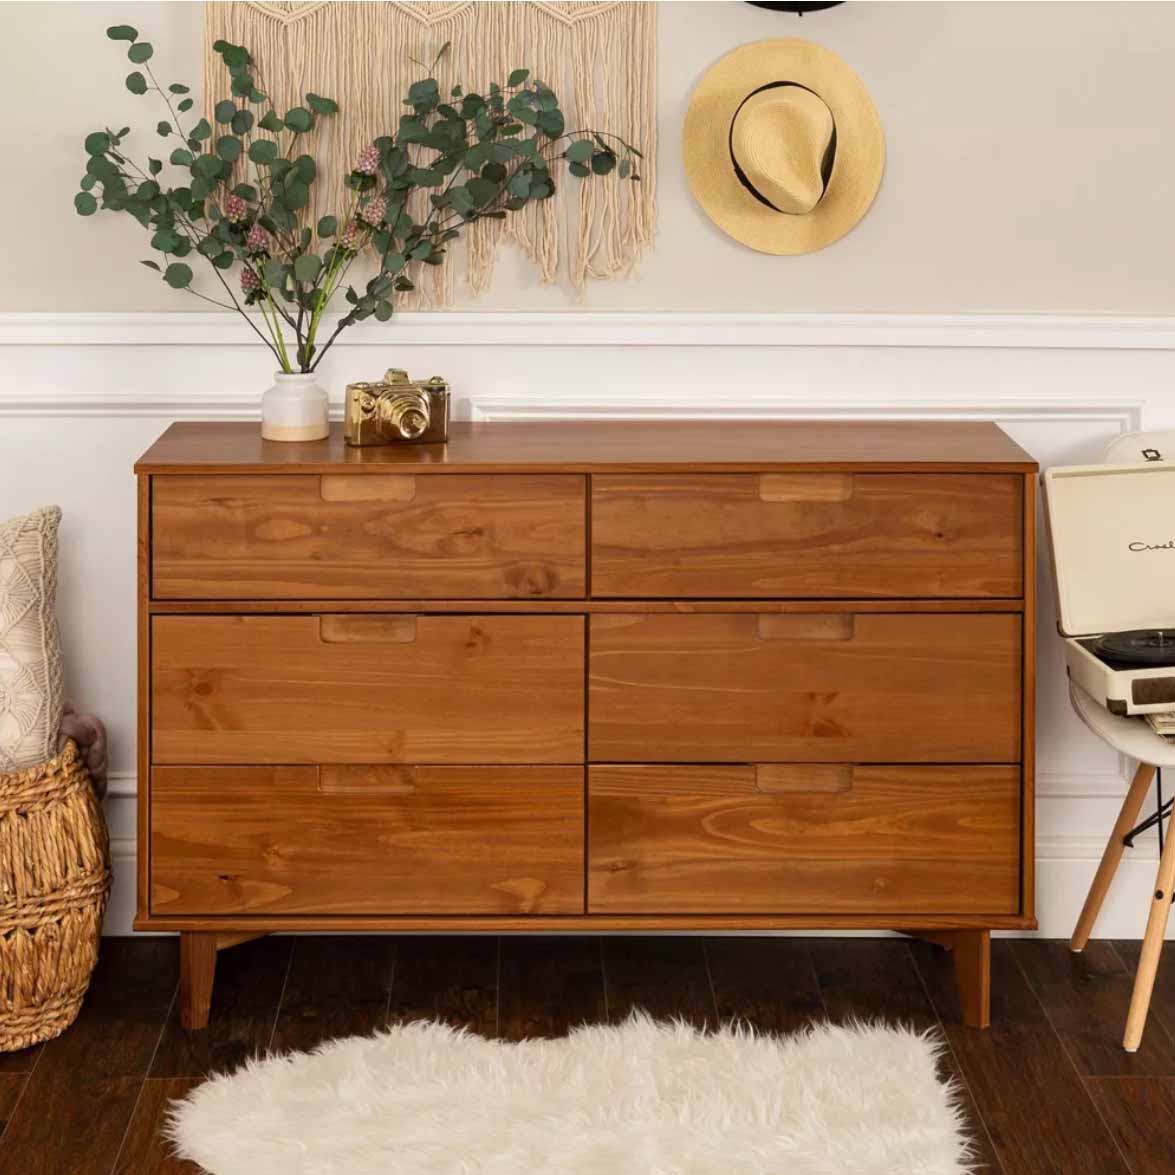 Brown mid-century modern designed dresser